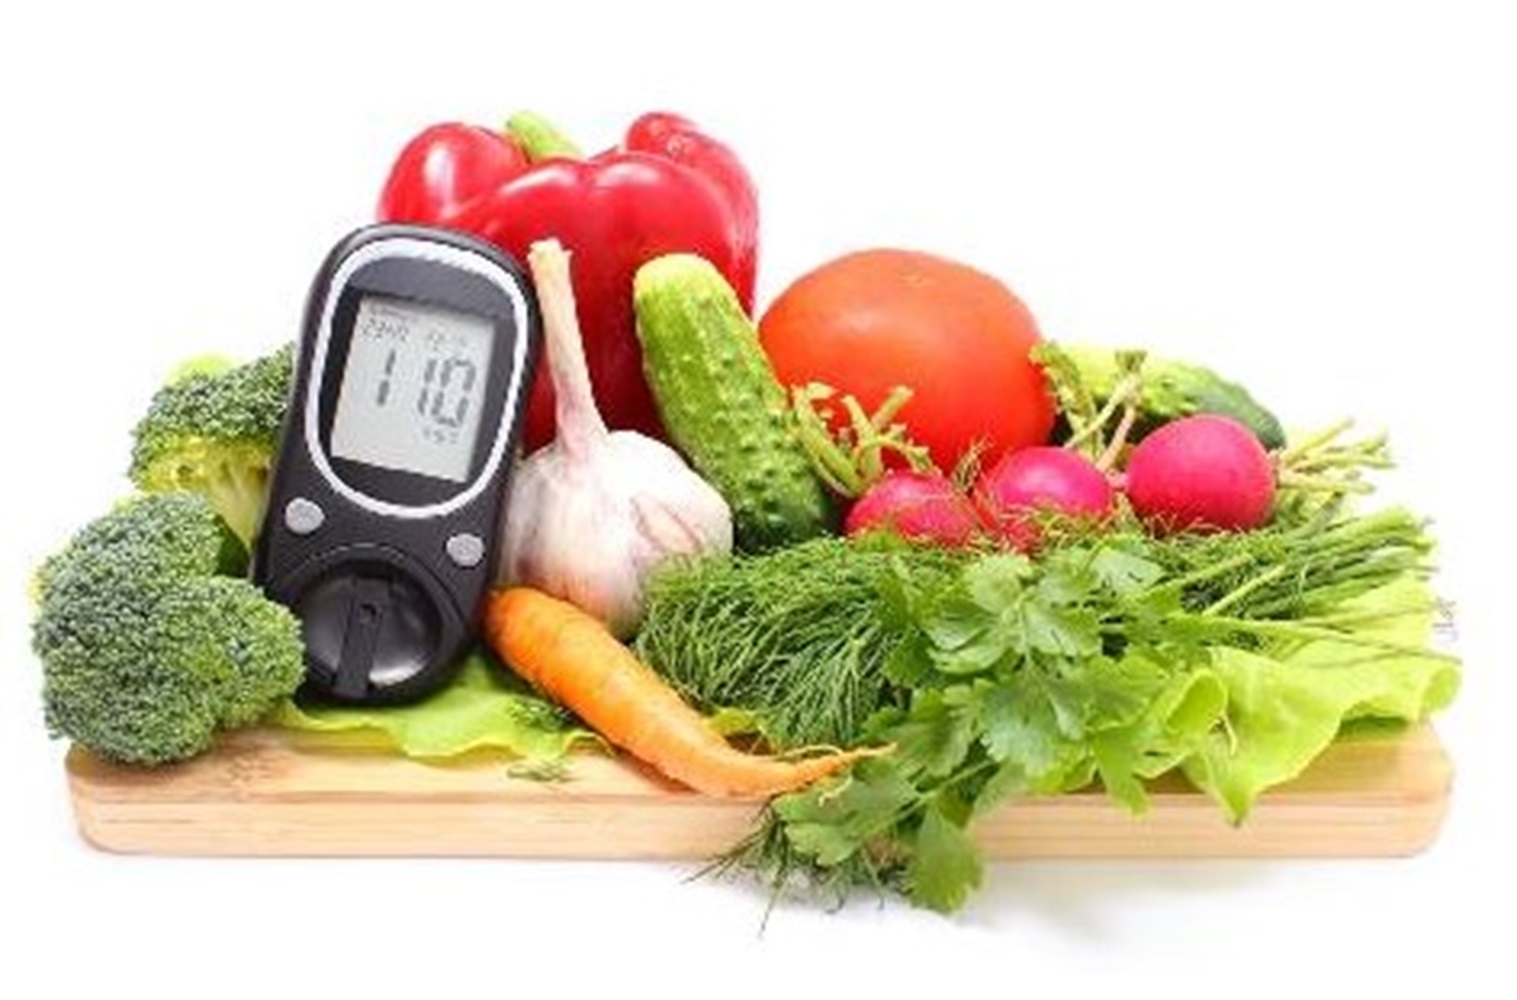 Mie Sirataki Juga Bagus untuk Penderita Diabetes Militus, Alpukat dan Tomat Bisa Jadi Pilihan (Bagian 2-habis)